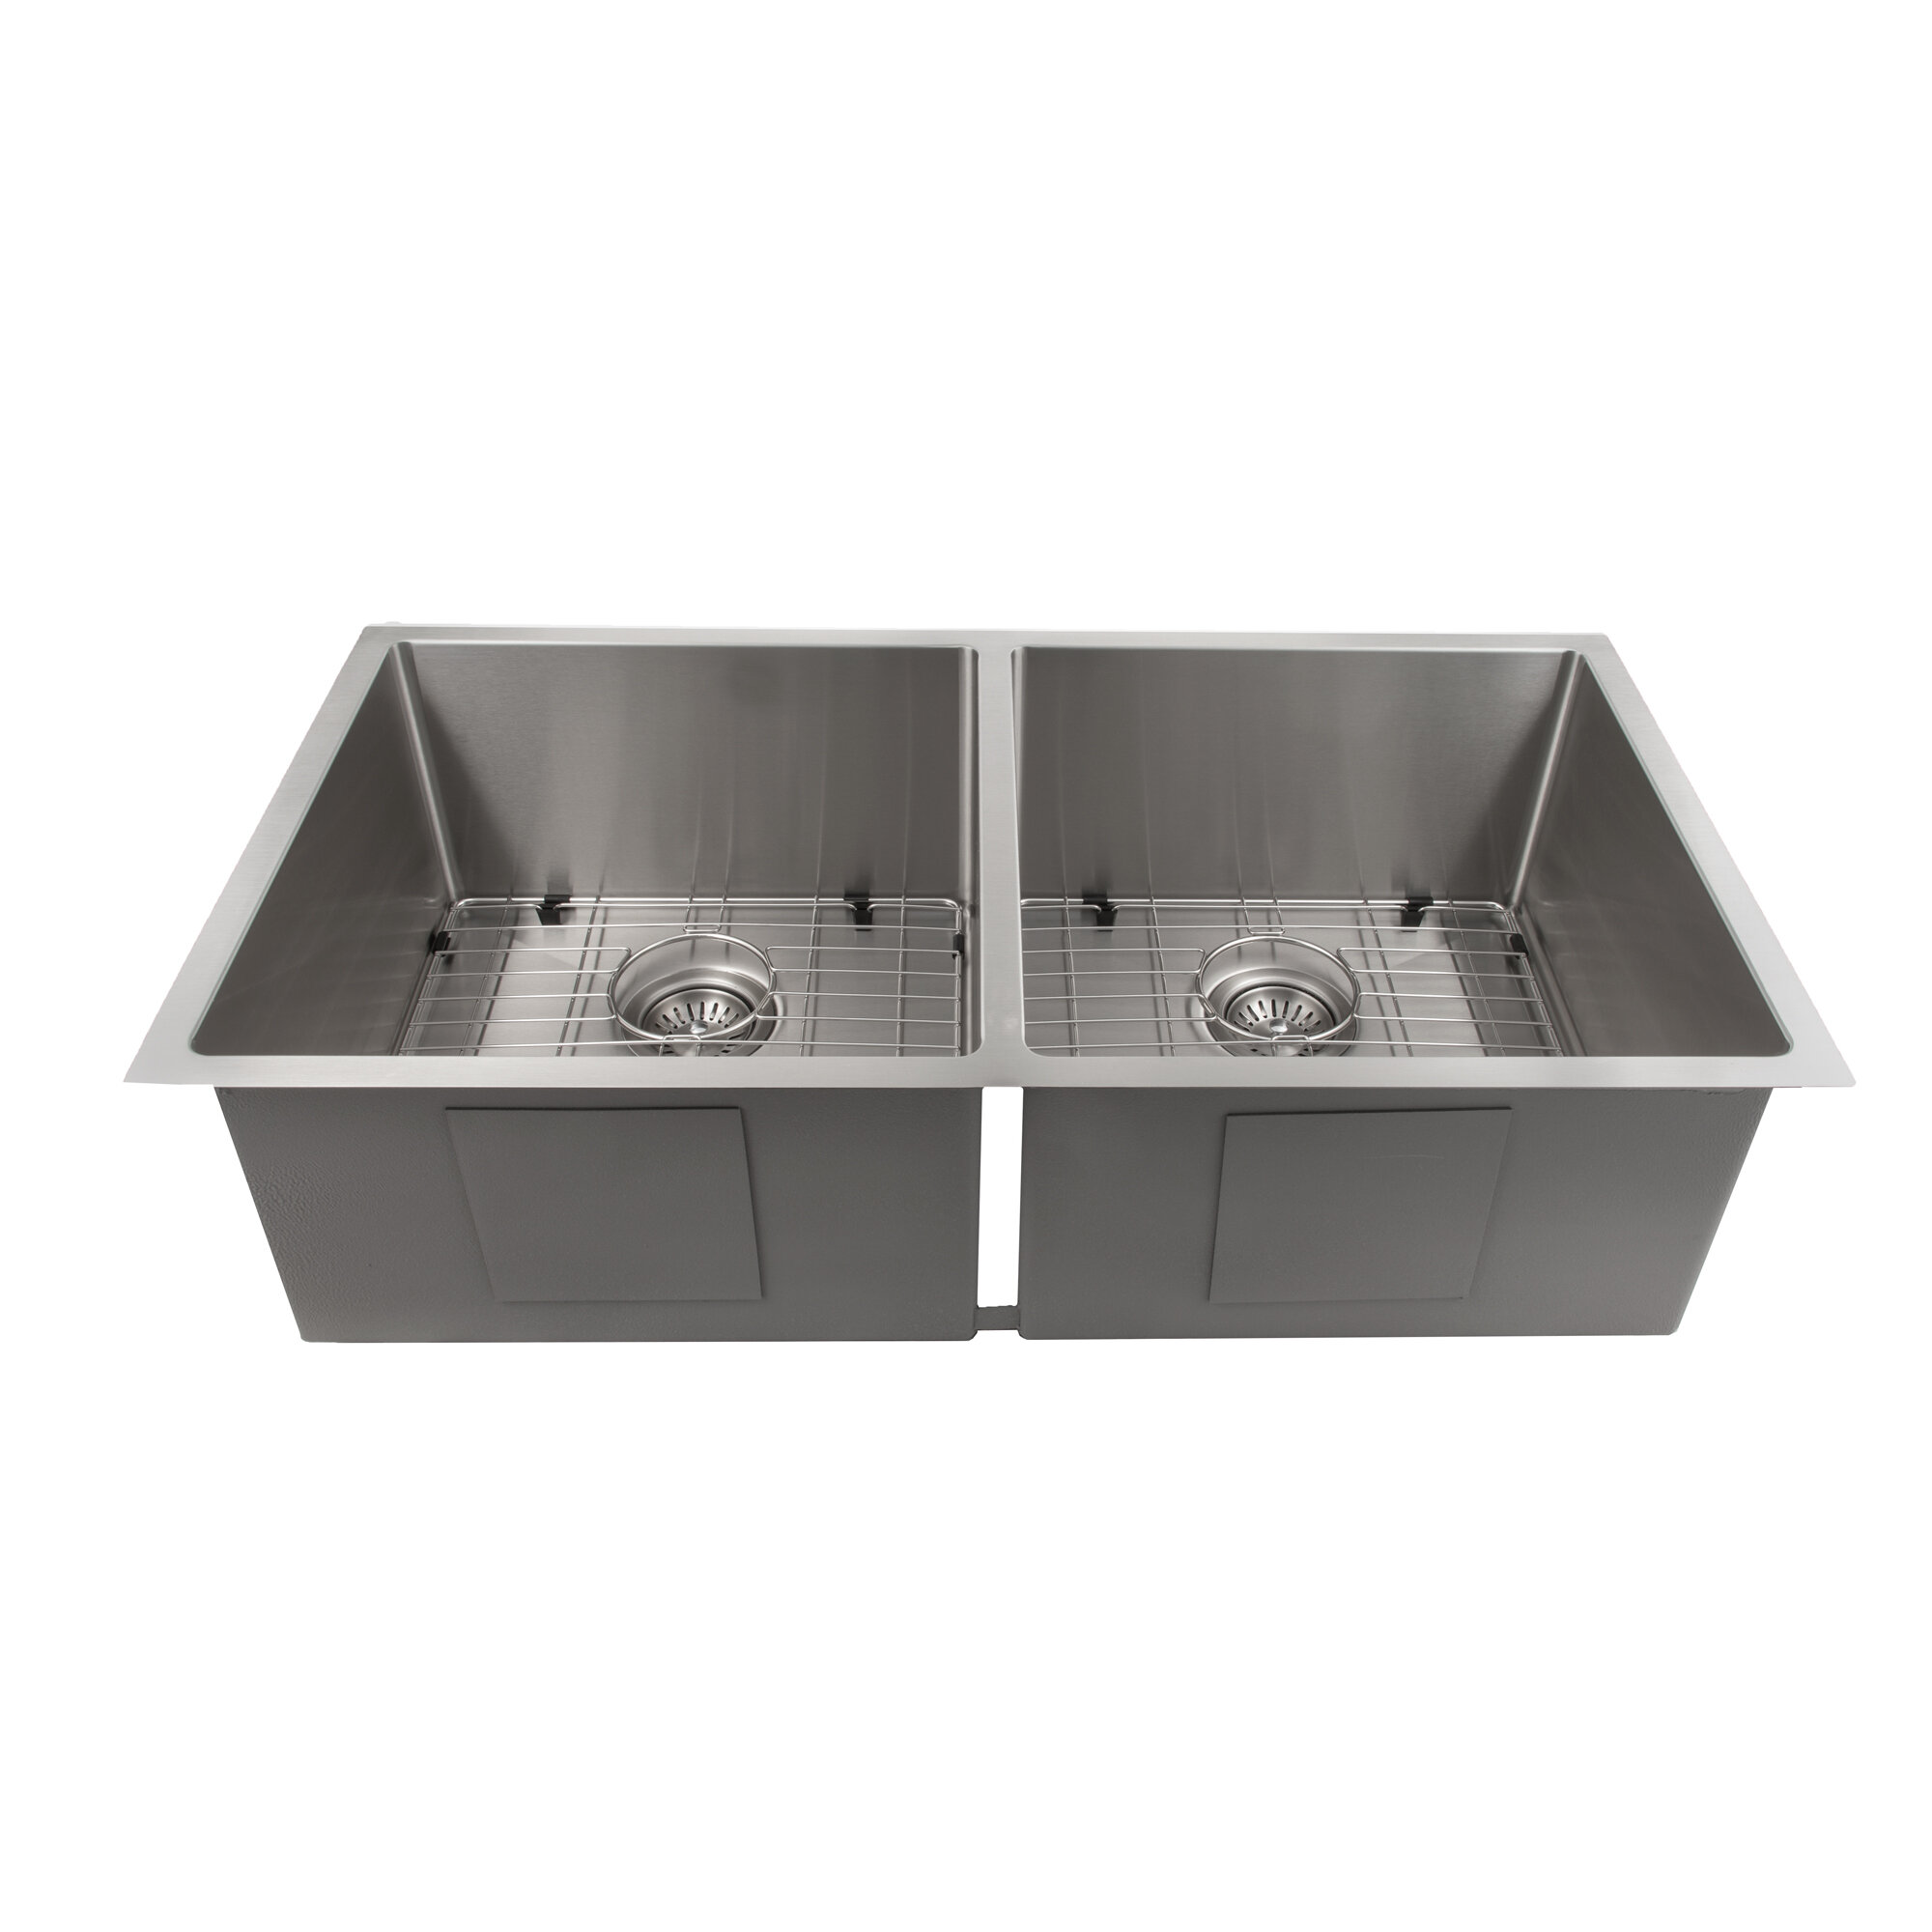 https://assets.wfcdn.com/im/20809462/compr-r85/6728/67286616/36-l-undermount-double-bowl-stainless-steel-kitchen-sink.jpg